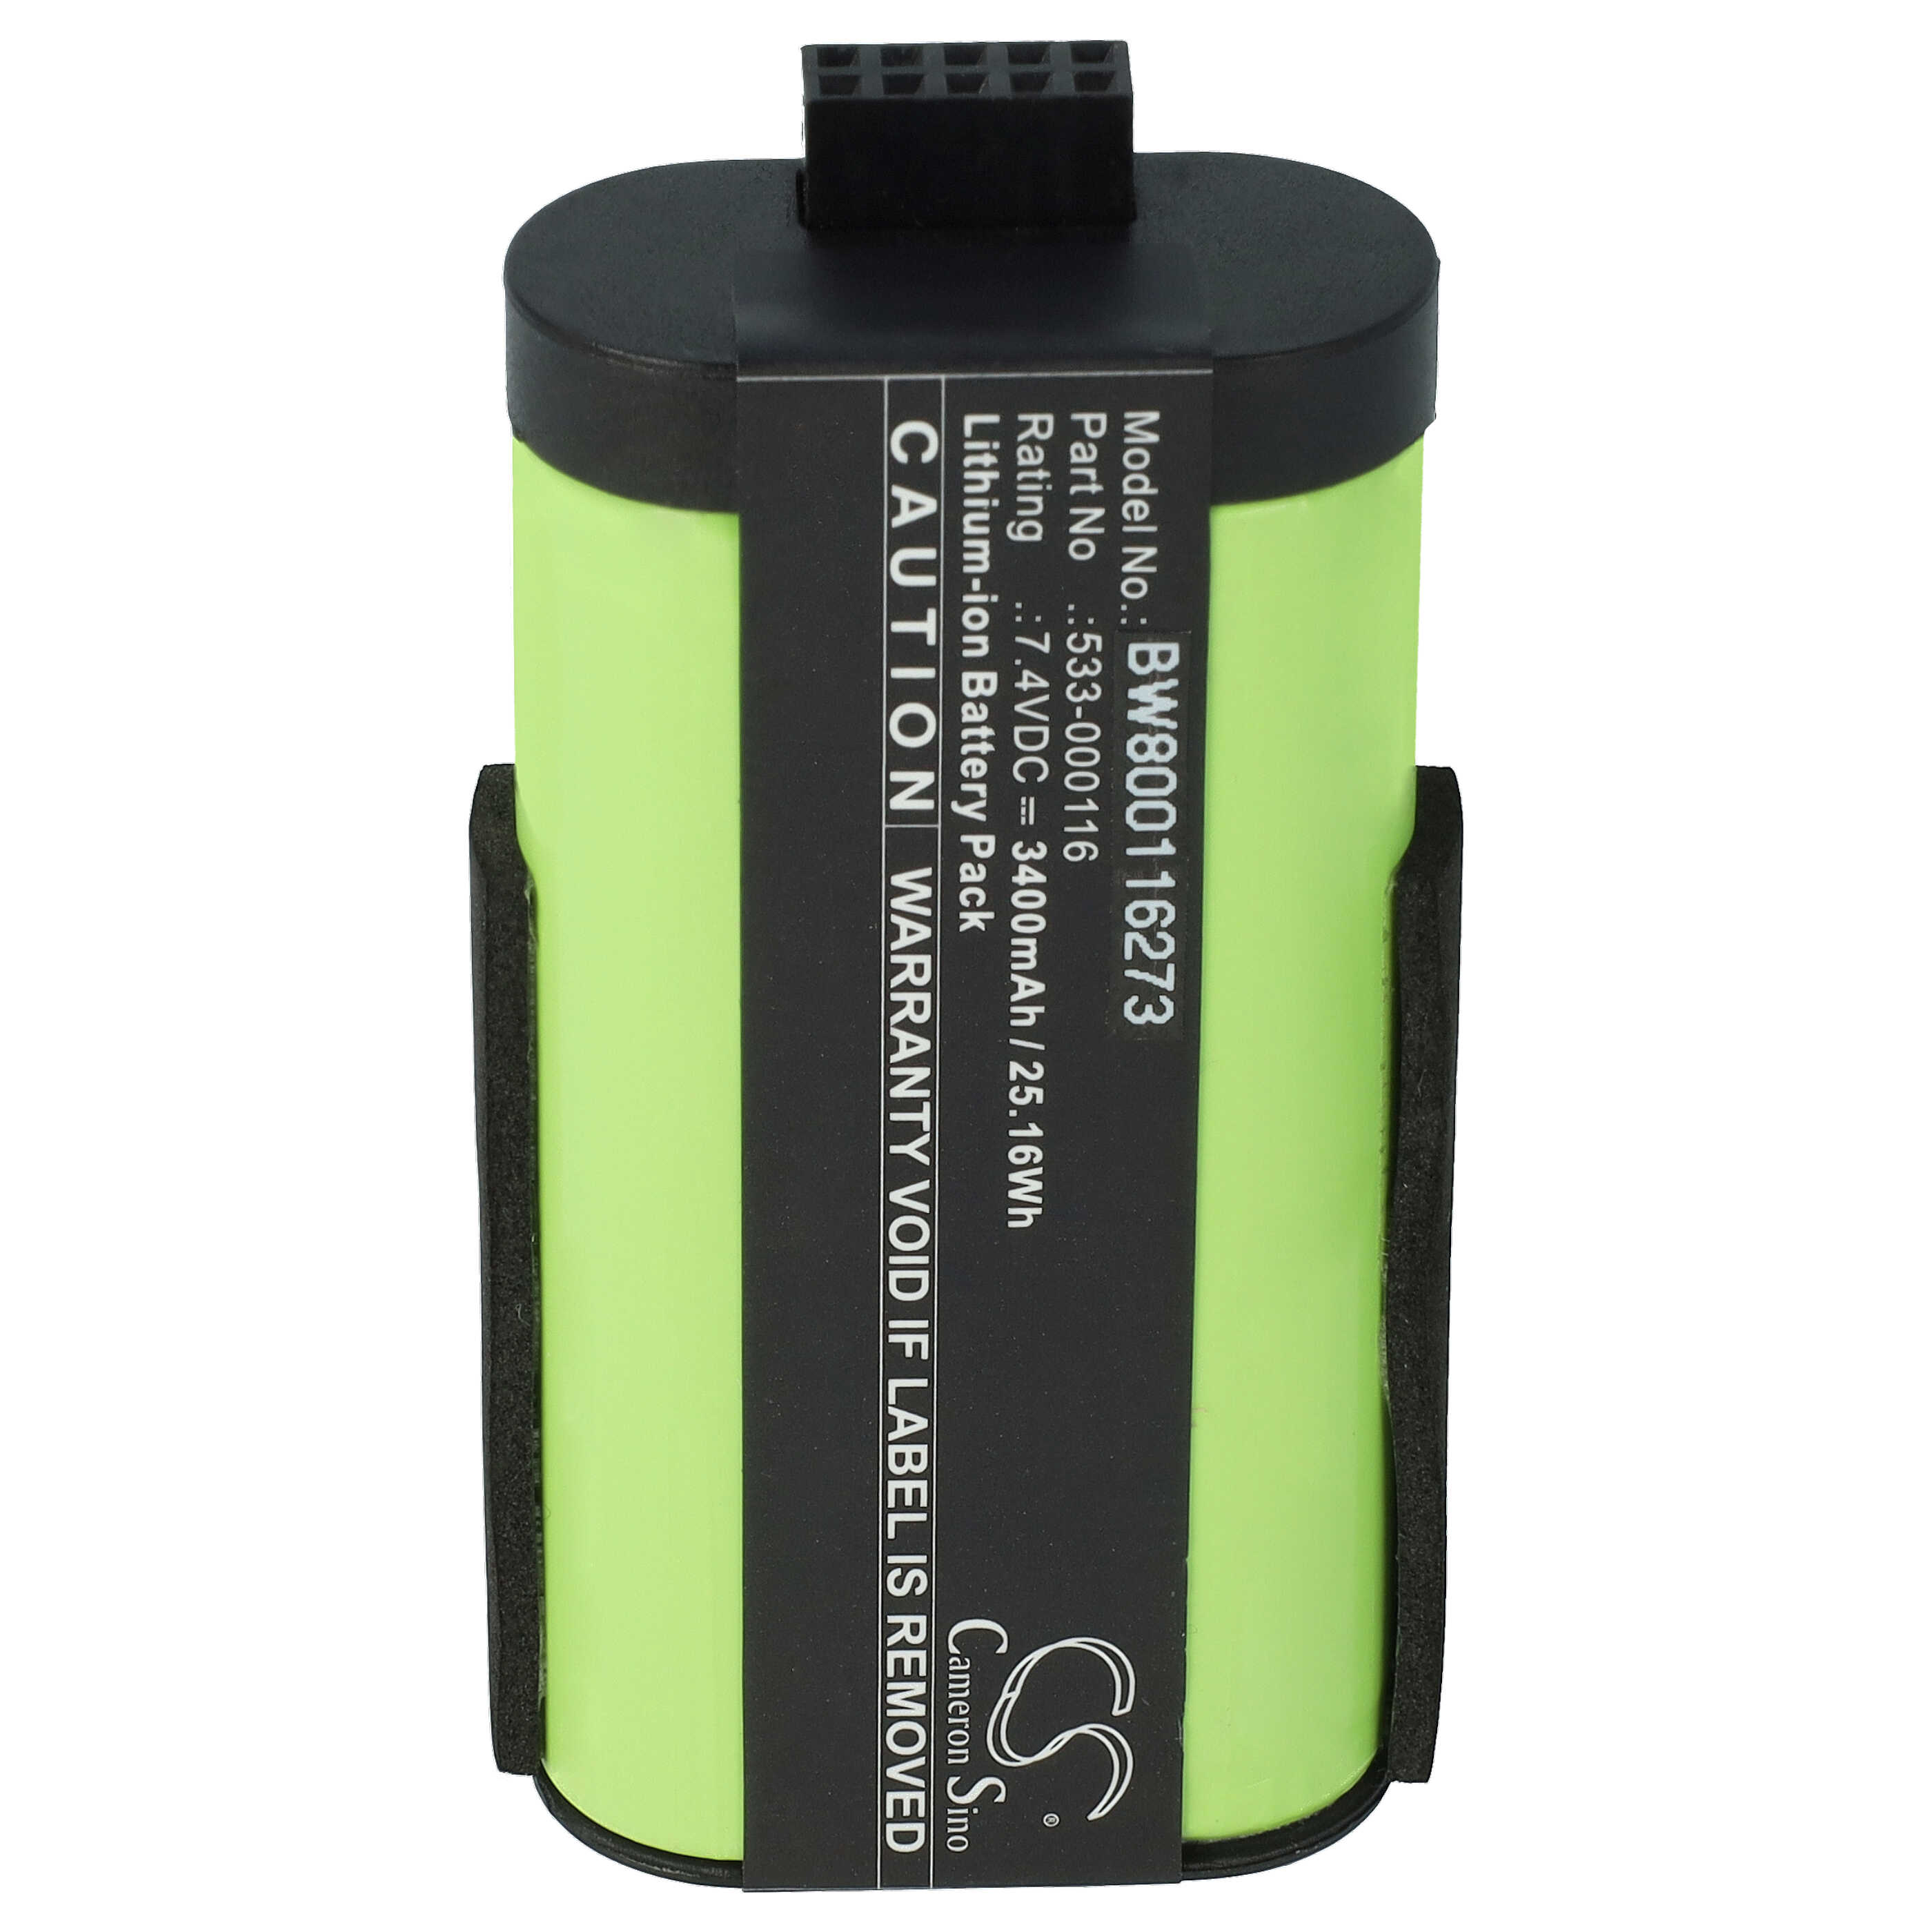 Batterie remplace Logitech 533-000116, 533-000138 pour enceinte Logitech - 3400mAh 7,4V Li-ion